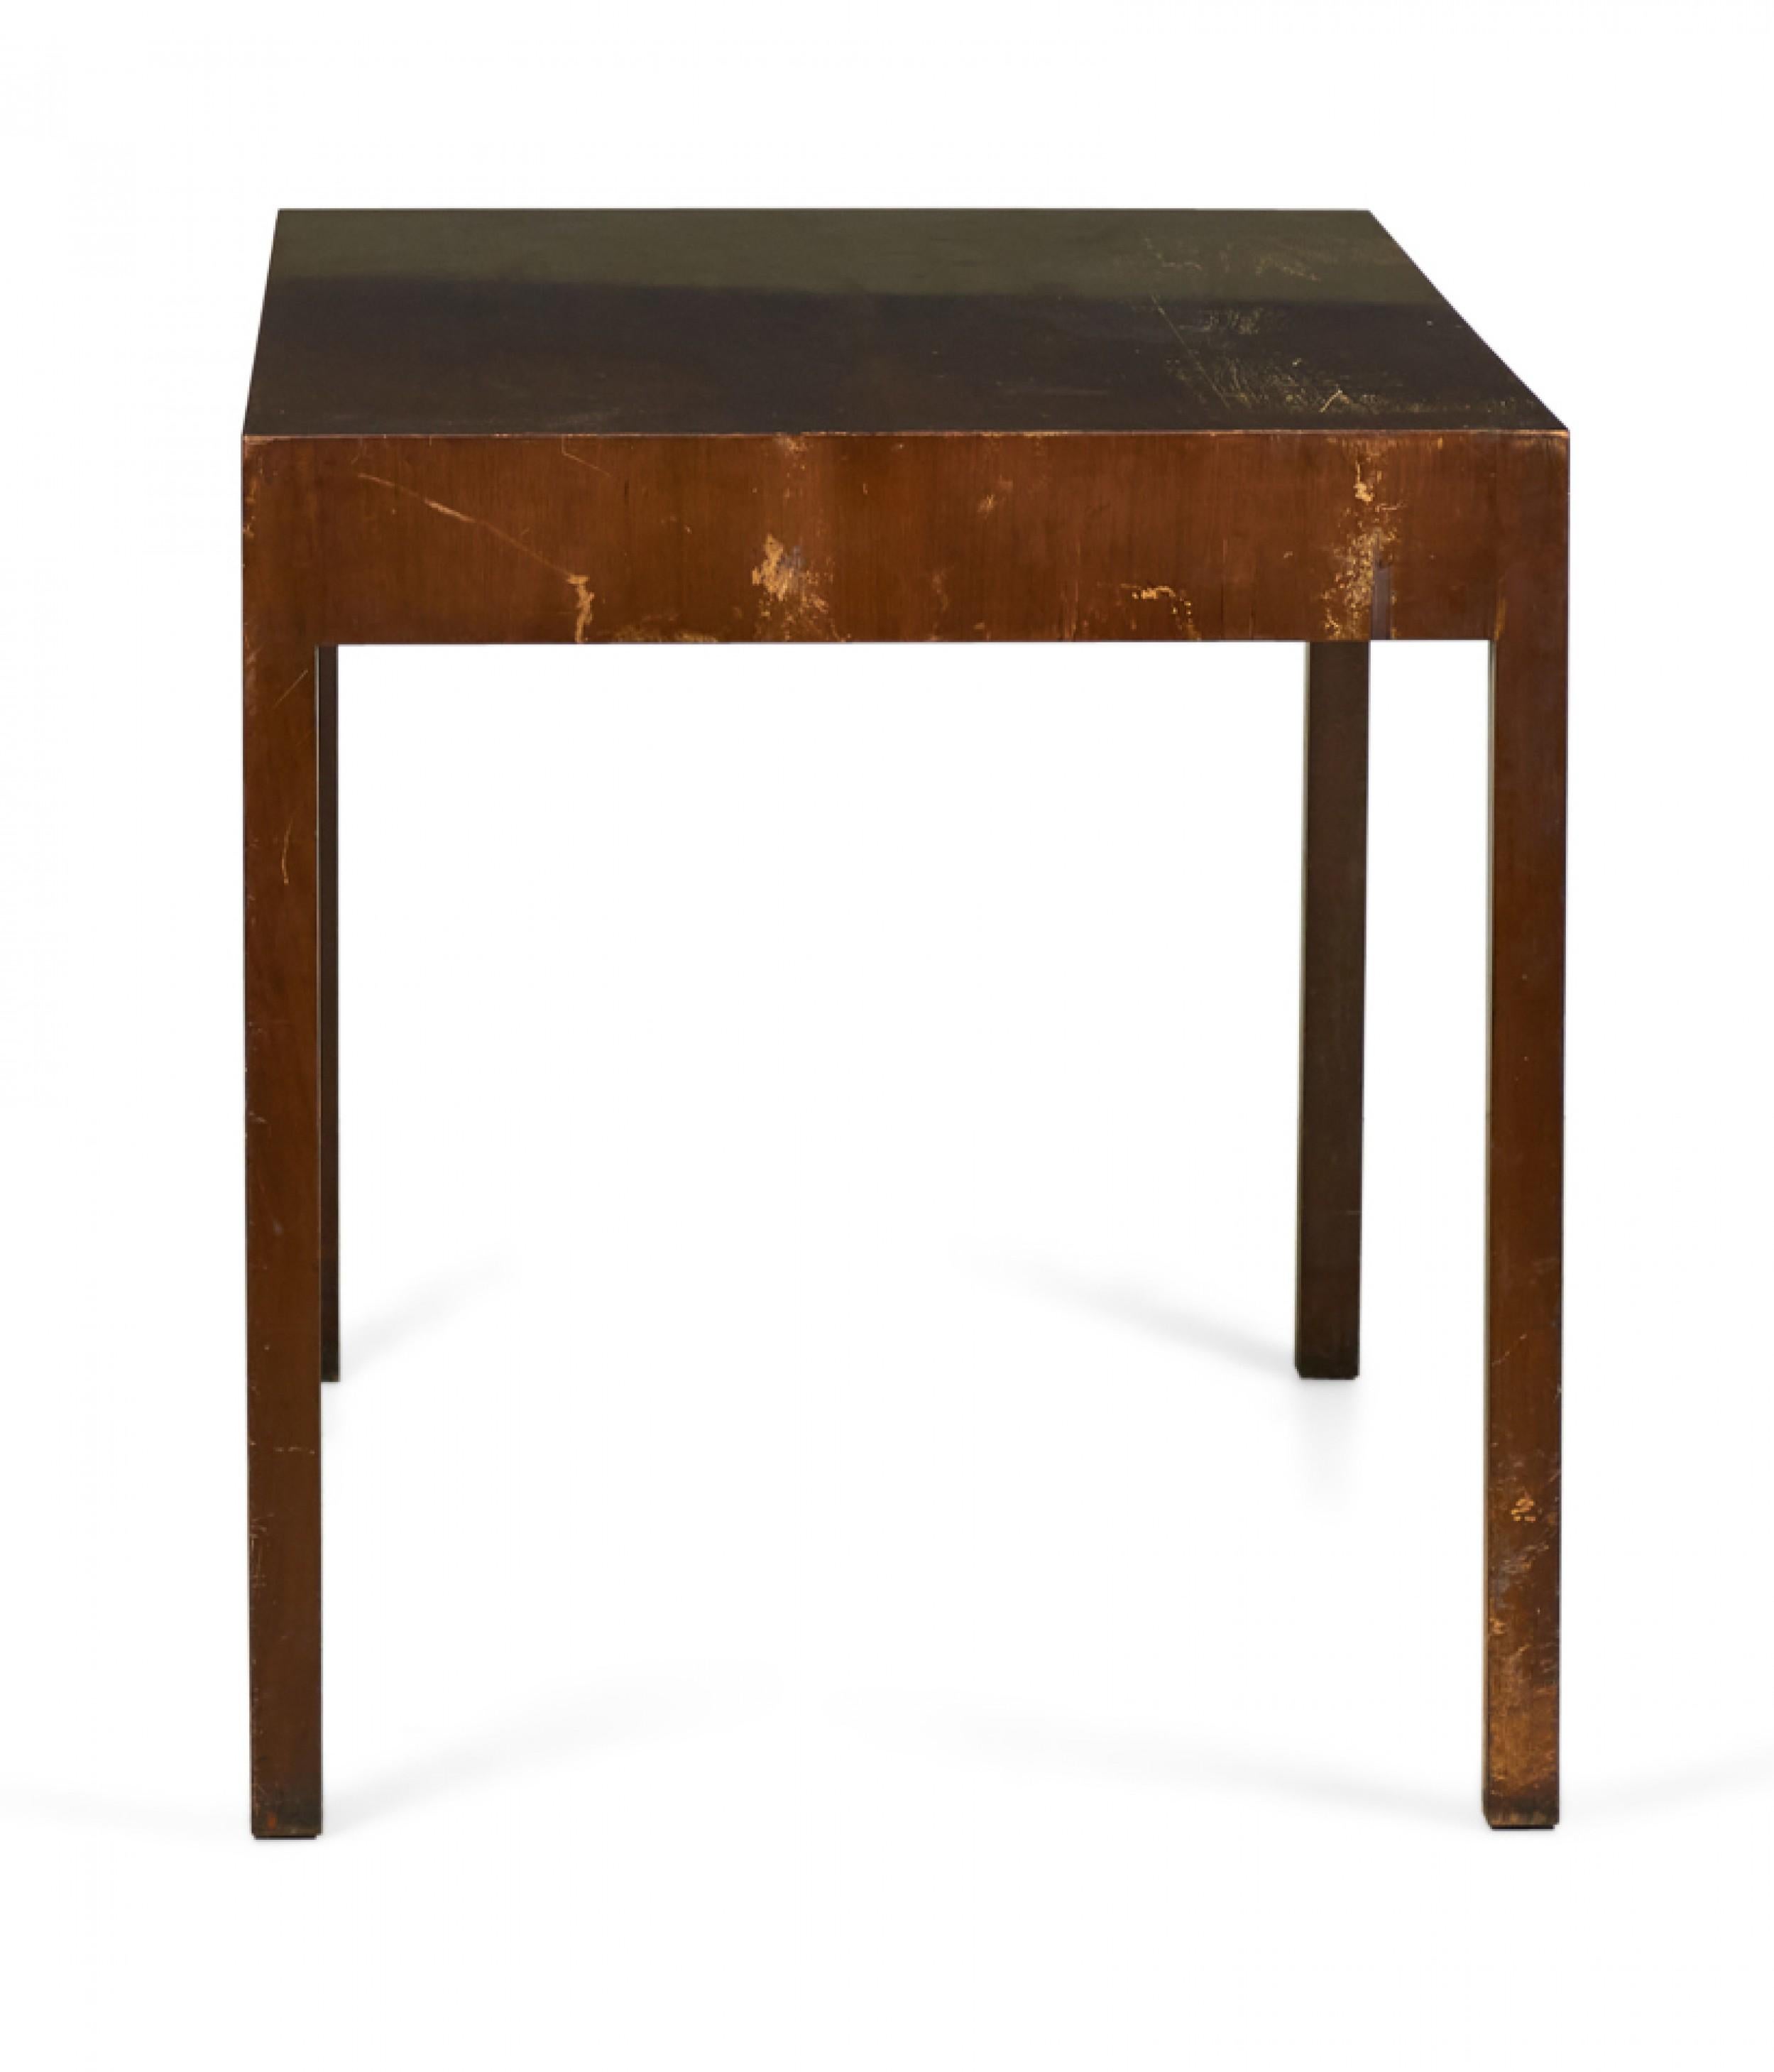 Bureau / table rectangulaire pour partenaires, de style Parsons, de style américain du milieu du siècle, avec trois tiroirs à profil bas de chaque côté.
